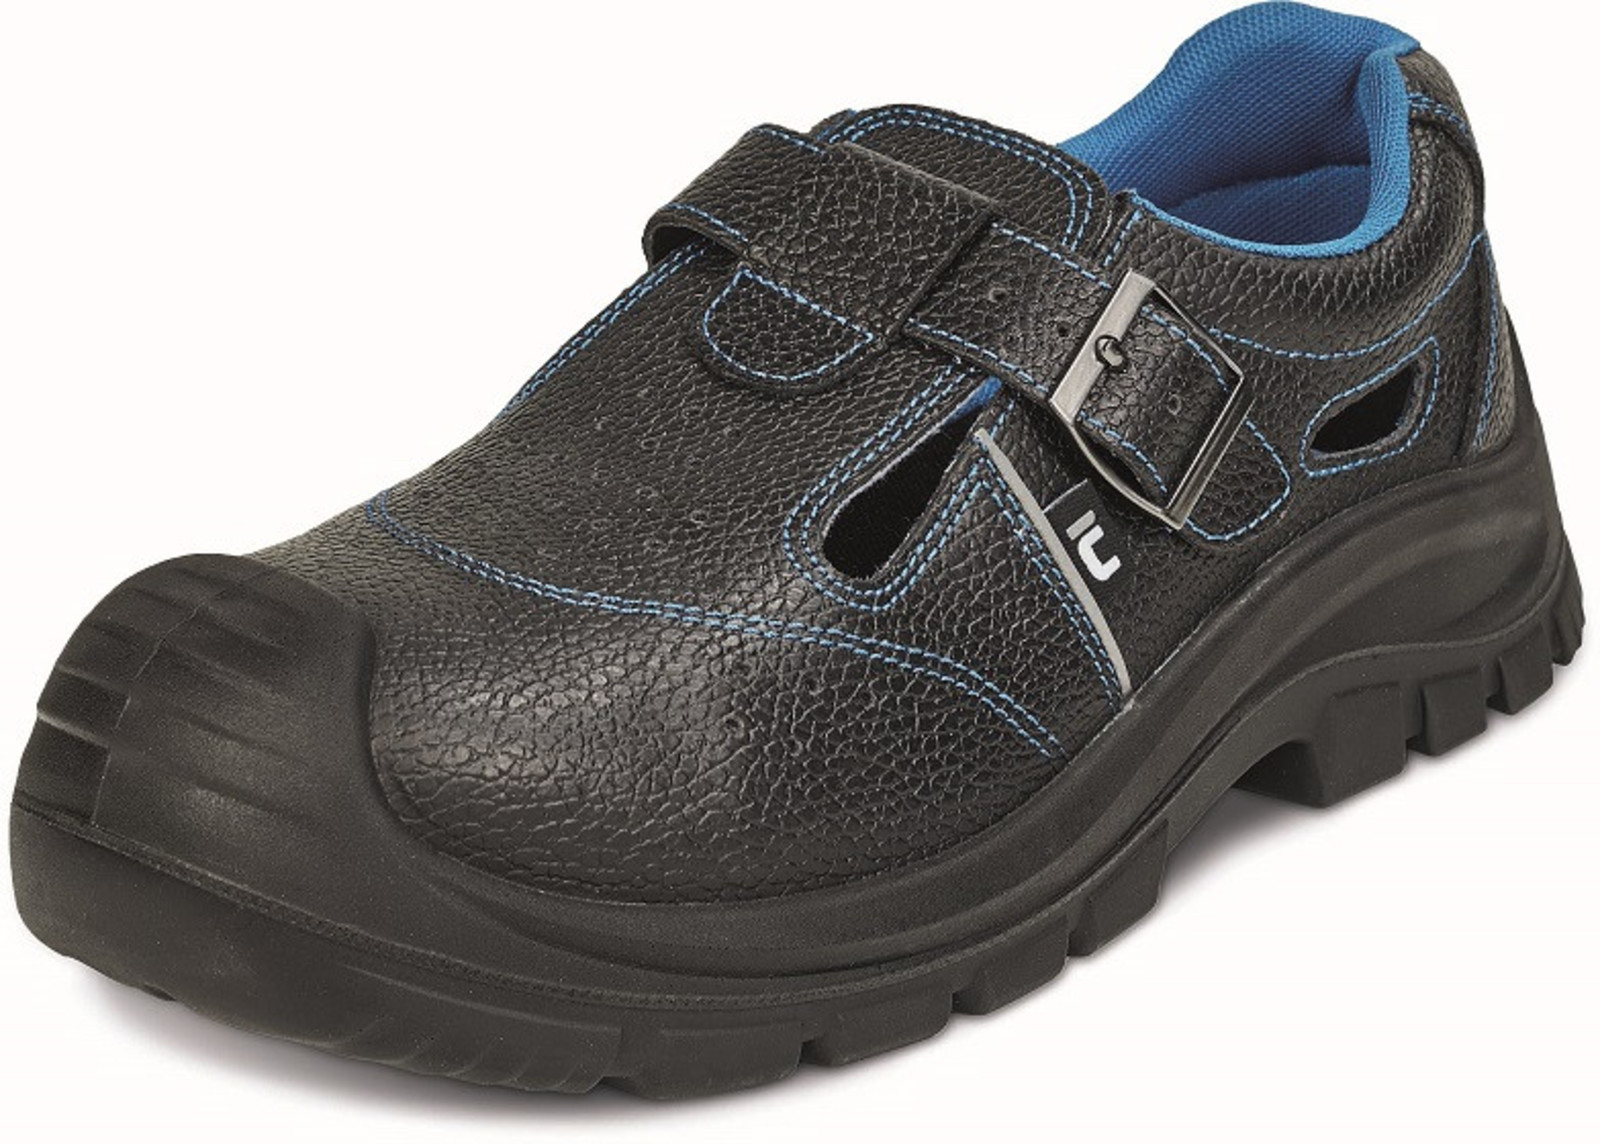 Bezpečnostné sandále Raven XT S1 SRC - veľkosť: 47, farba: čierna